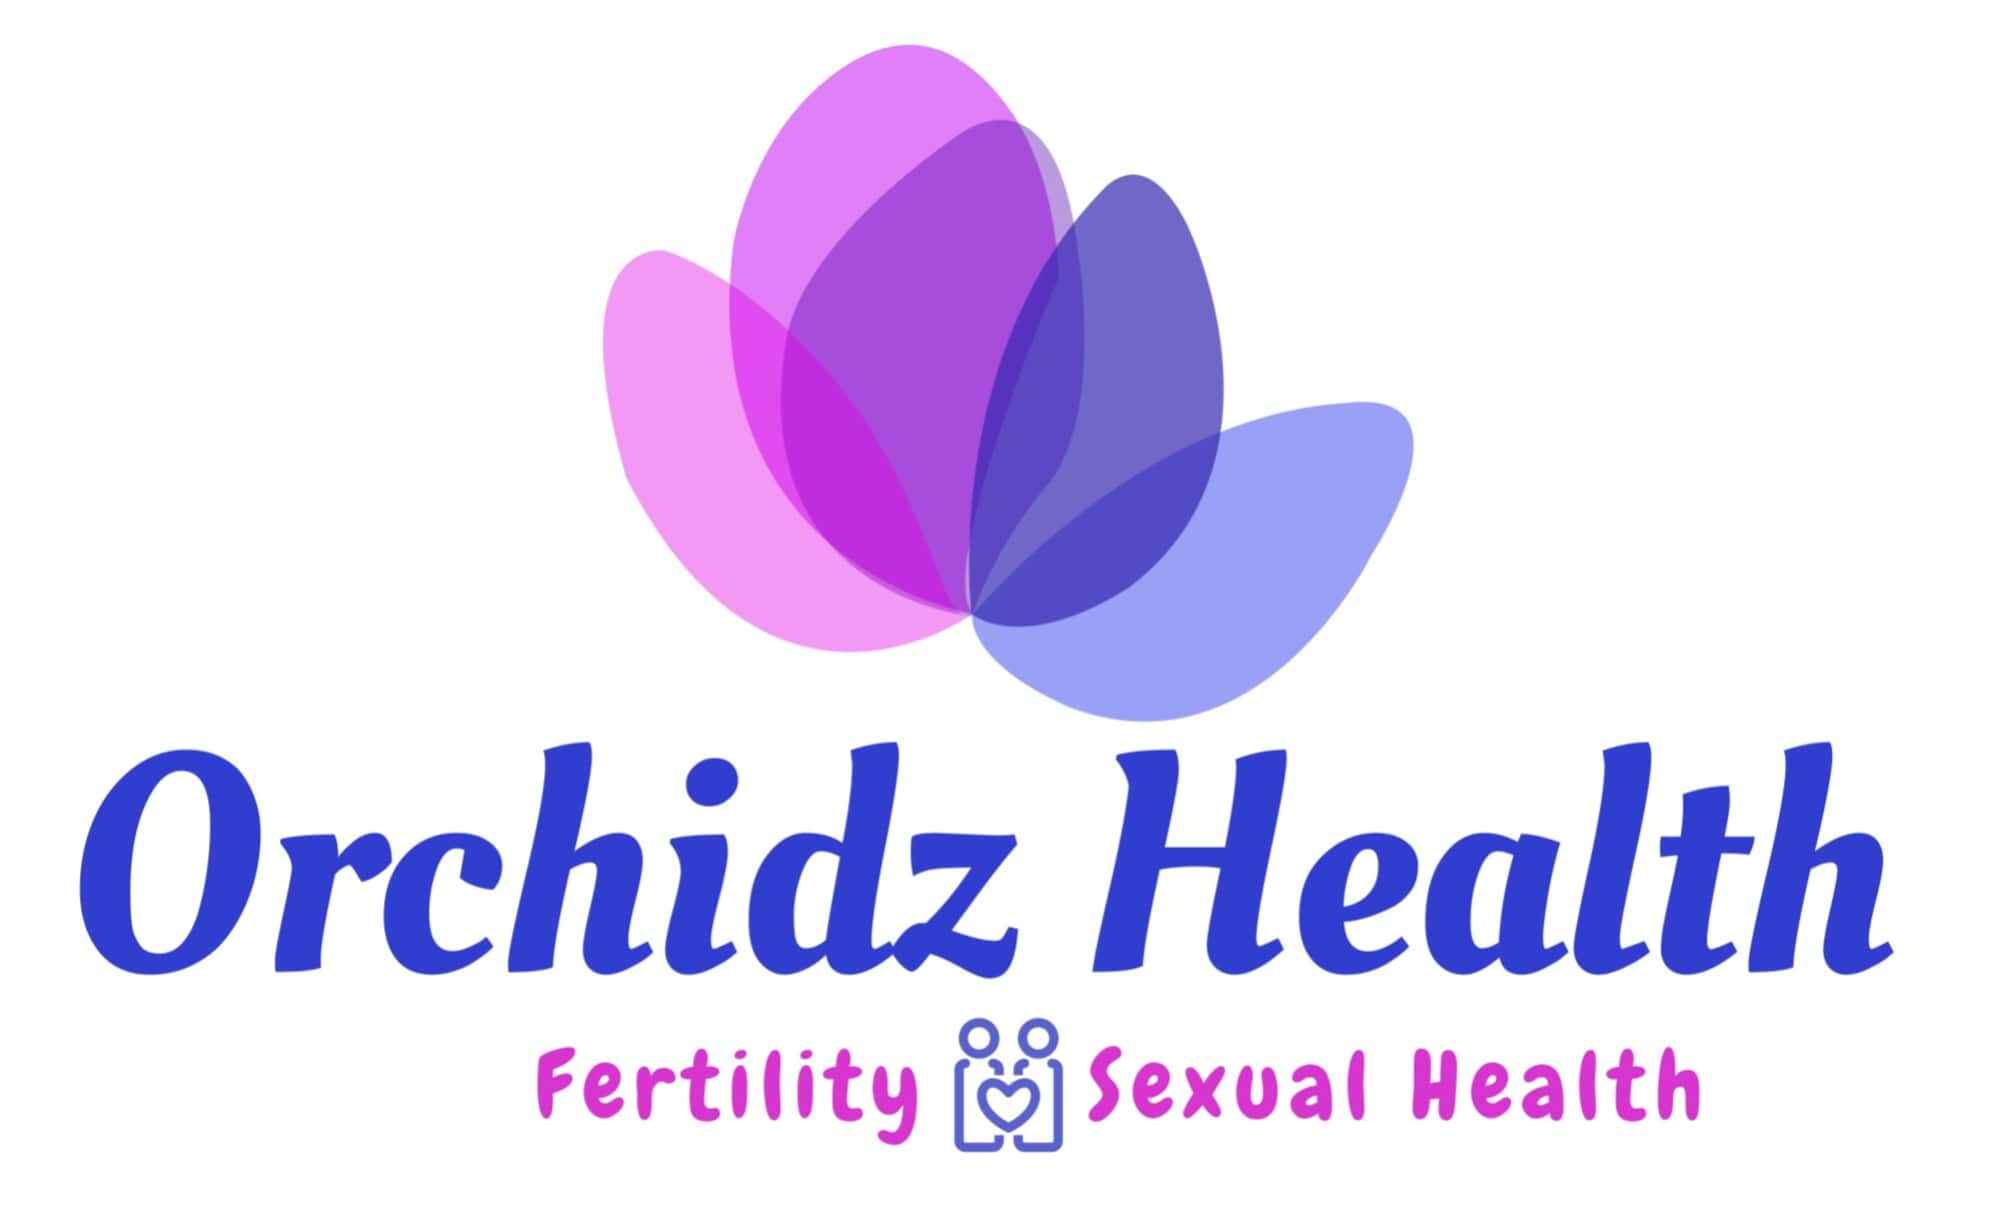 Orchidz Health